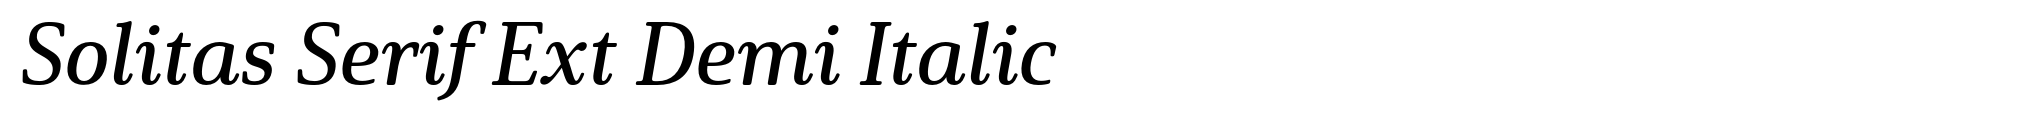 Solitas Serif Ext Demi Italic image